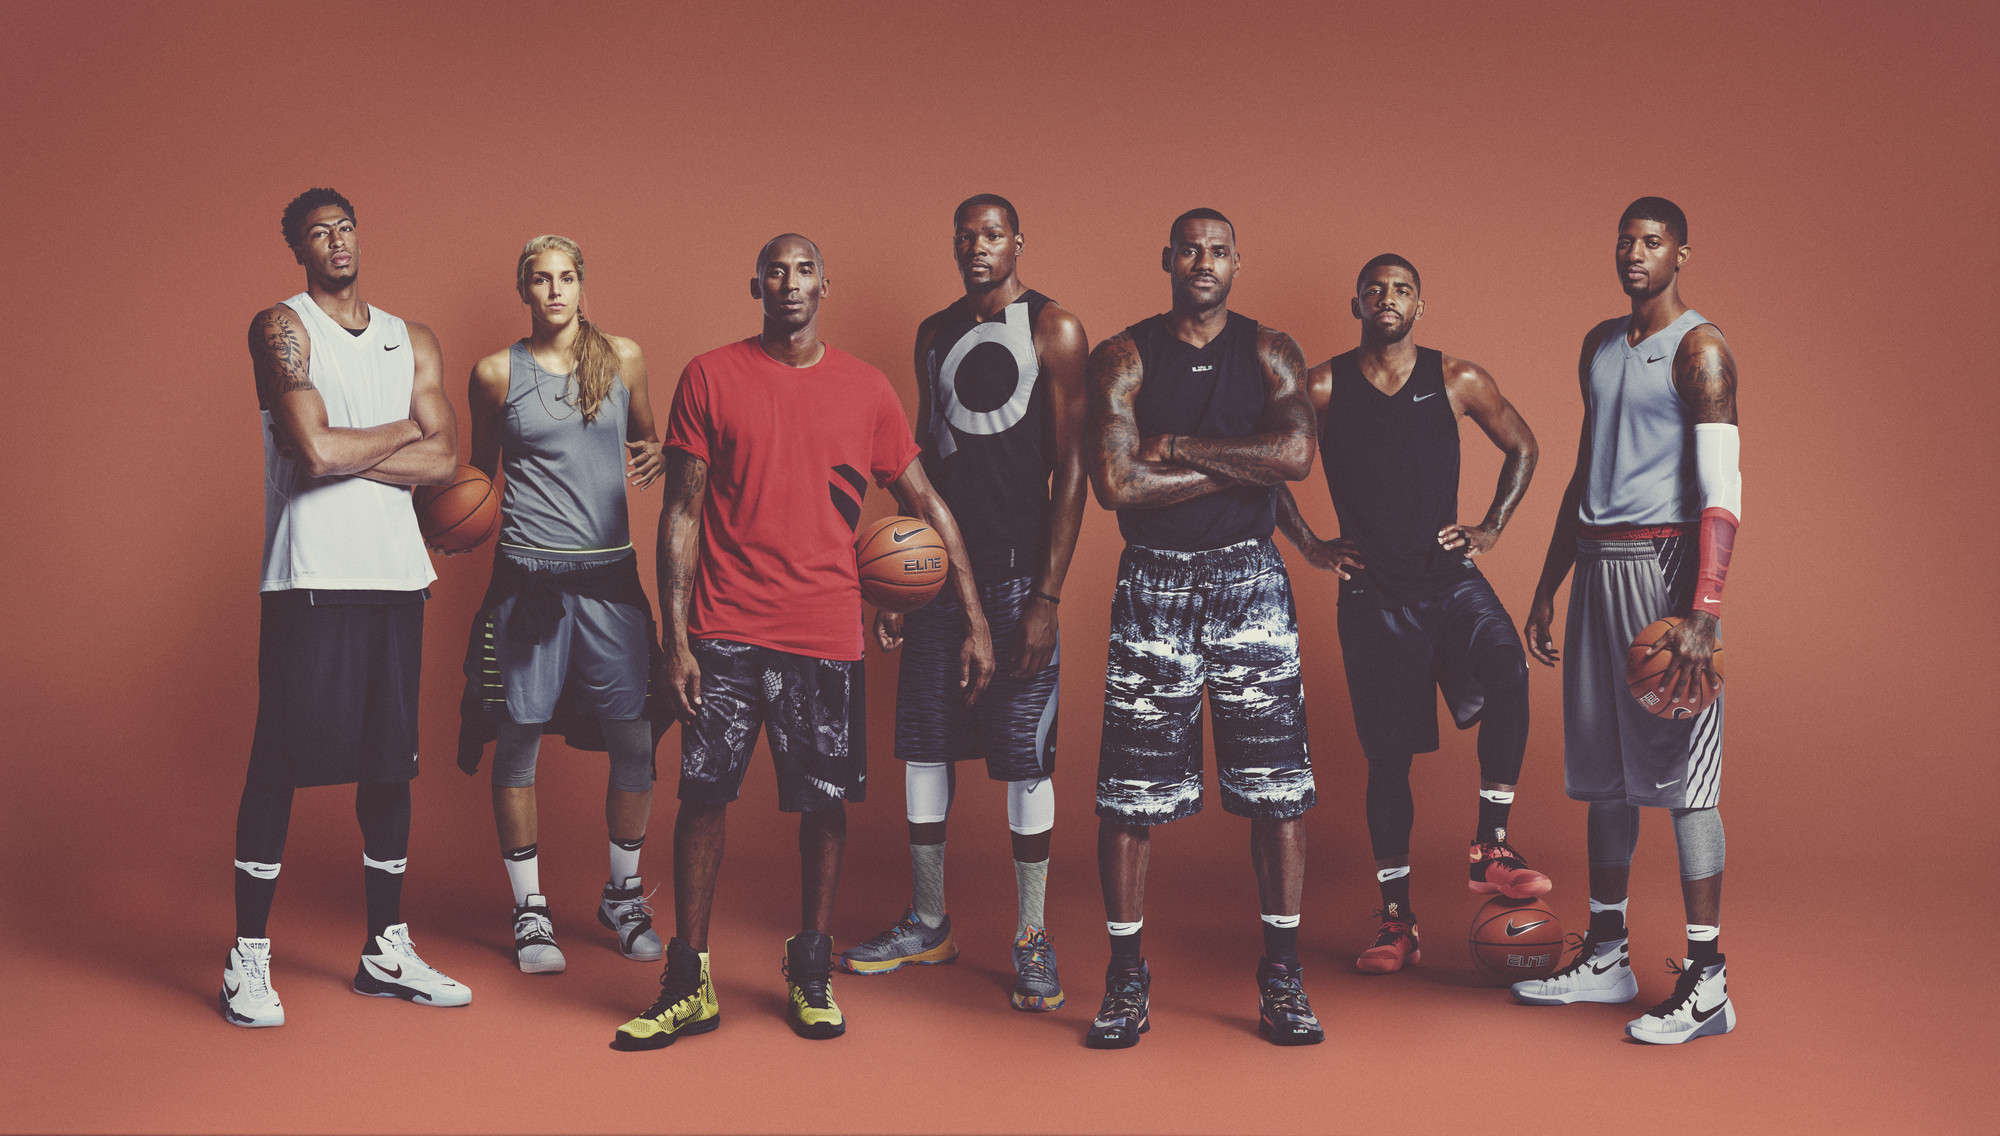 Waardig Ontvangst Zielig Nike Basketball's New Short Film: 'Bring Your Game' (VIDEO) | SLAM